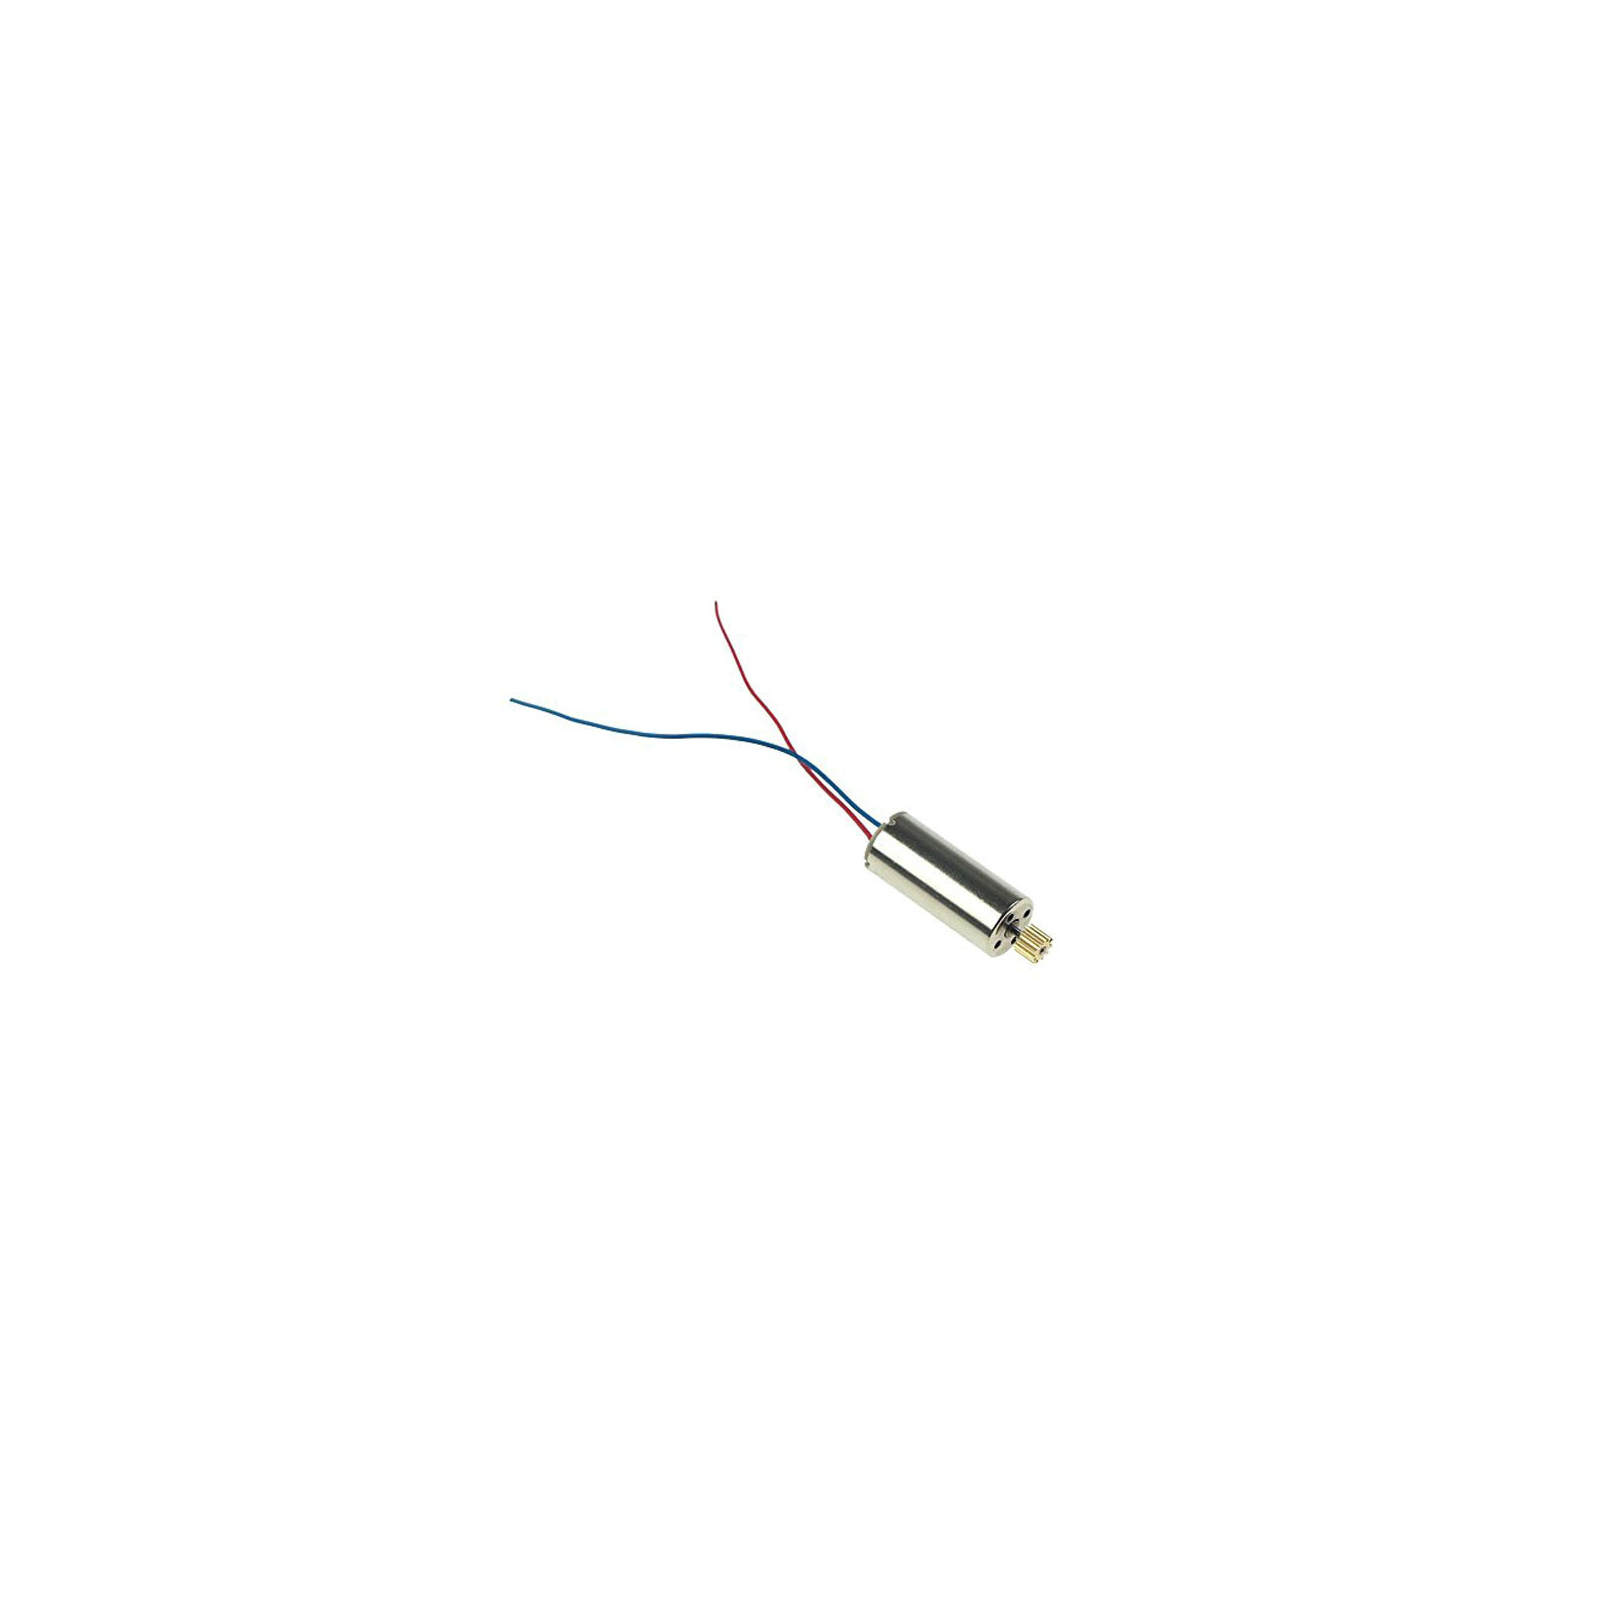 Аксессуар к радиоуправляемой модели Udirc Motor(Red and blue wire) для U818A-1 (U818A-1-09RB)